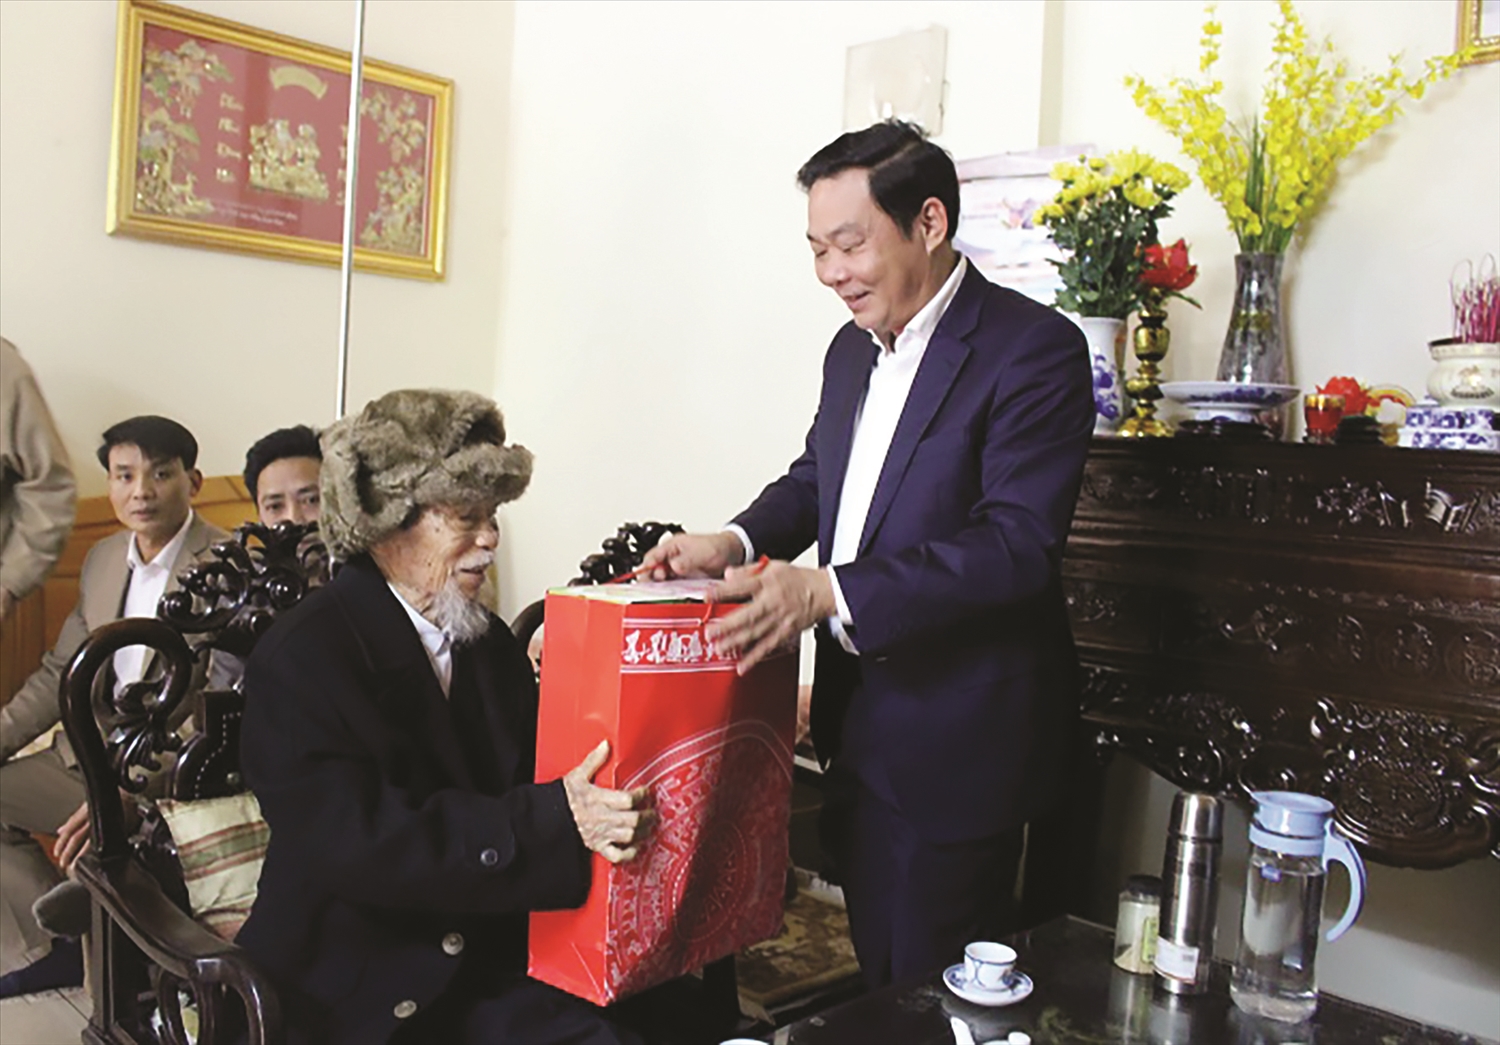 Phó Chủ tịch UBND TP. Hà Nội Lê Hồng Sơn thăm tặng quà cán bộ lão thành cách mạng huyện Chương Mỹ